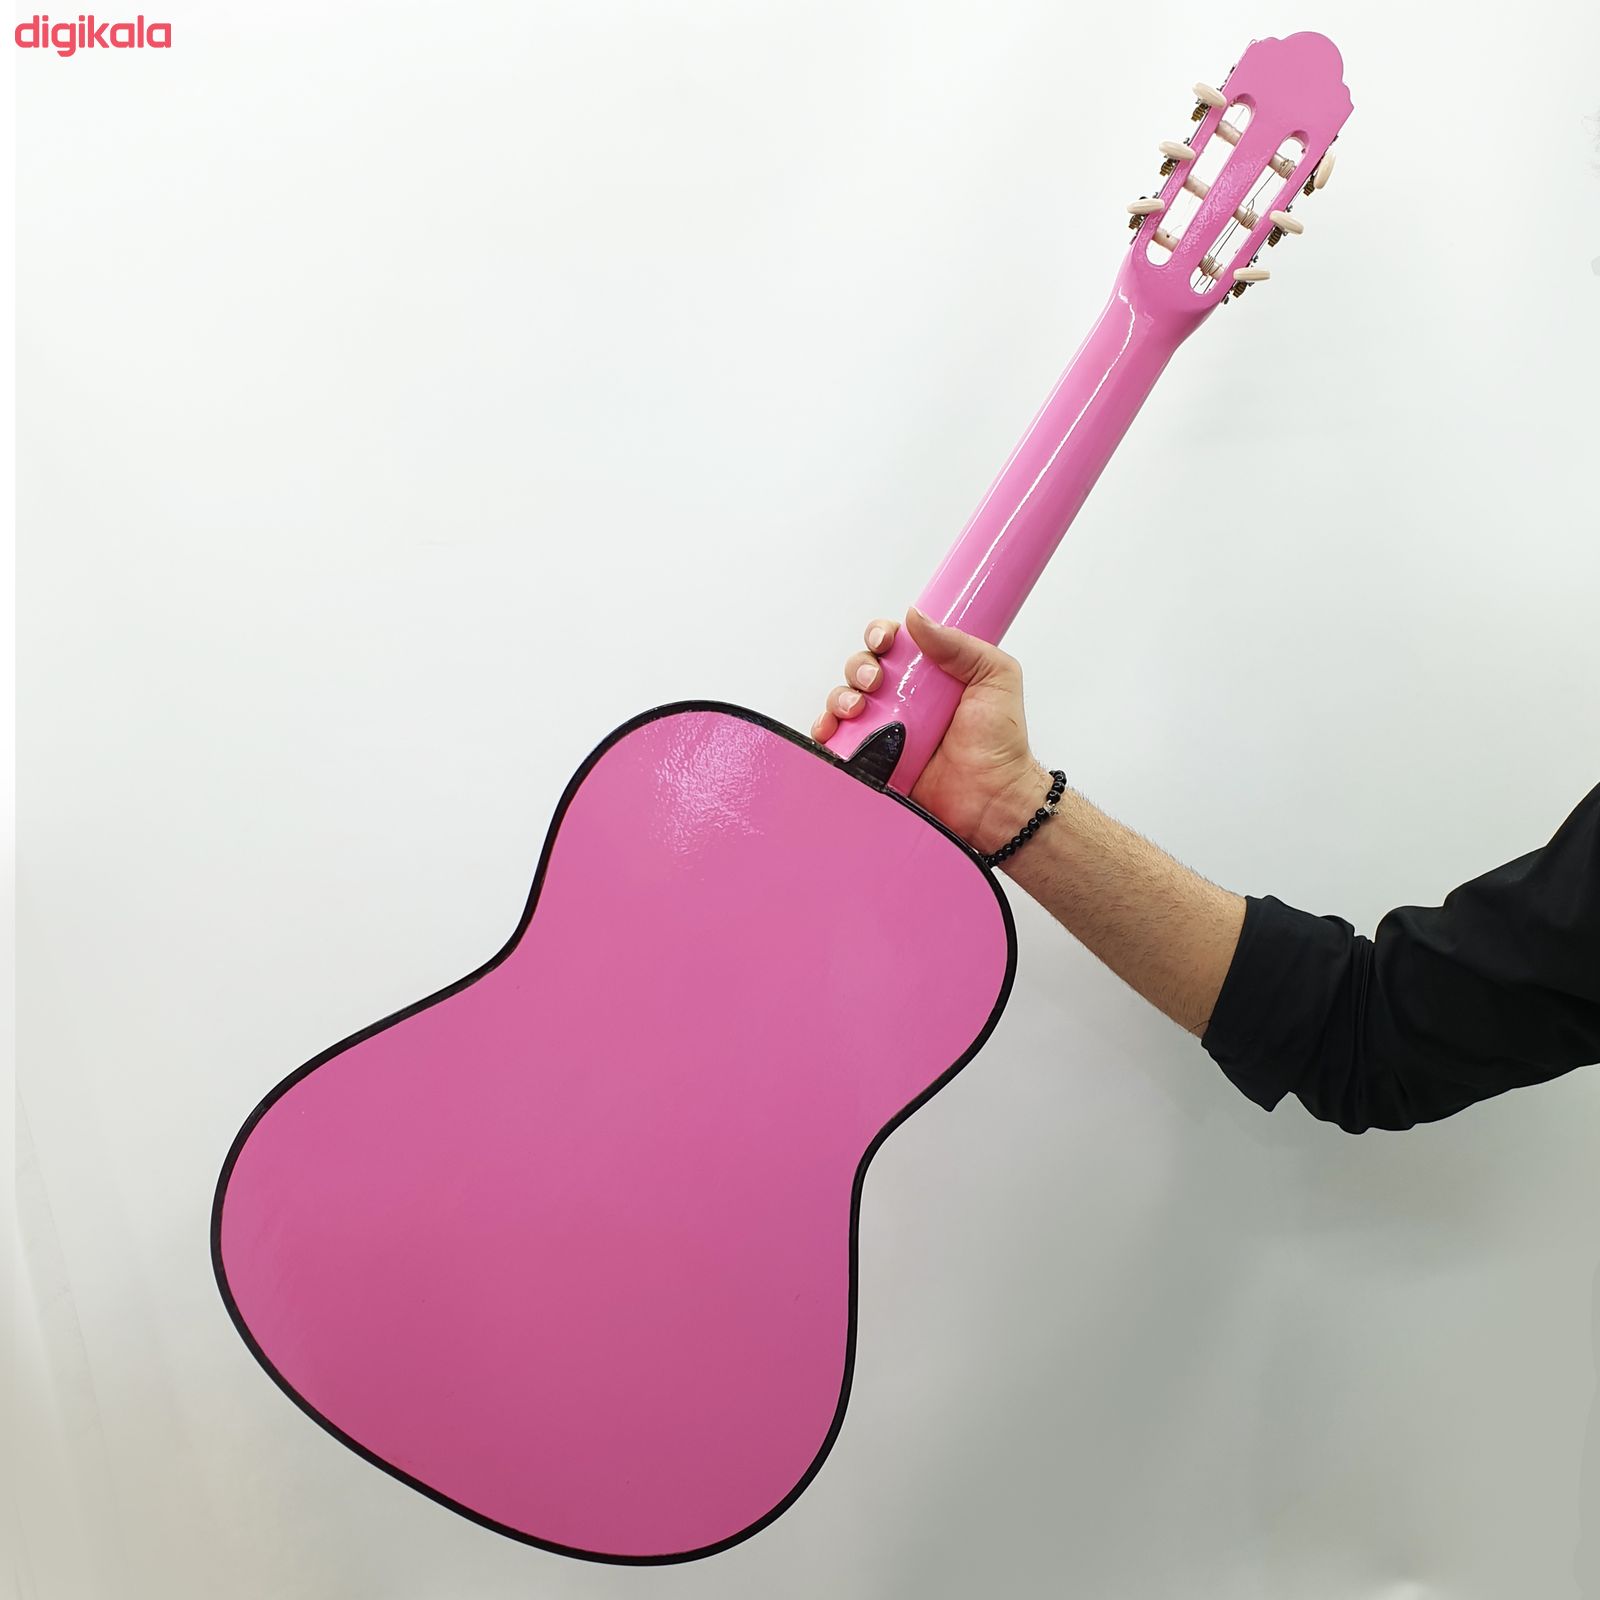 گیتار کلاسیک ایران ساز مدل G510- A12